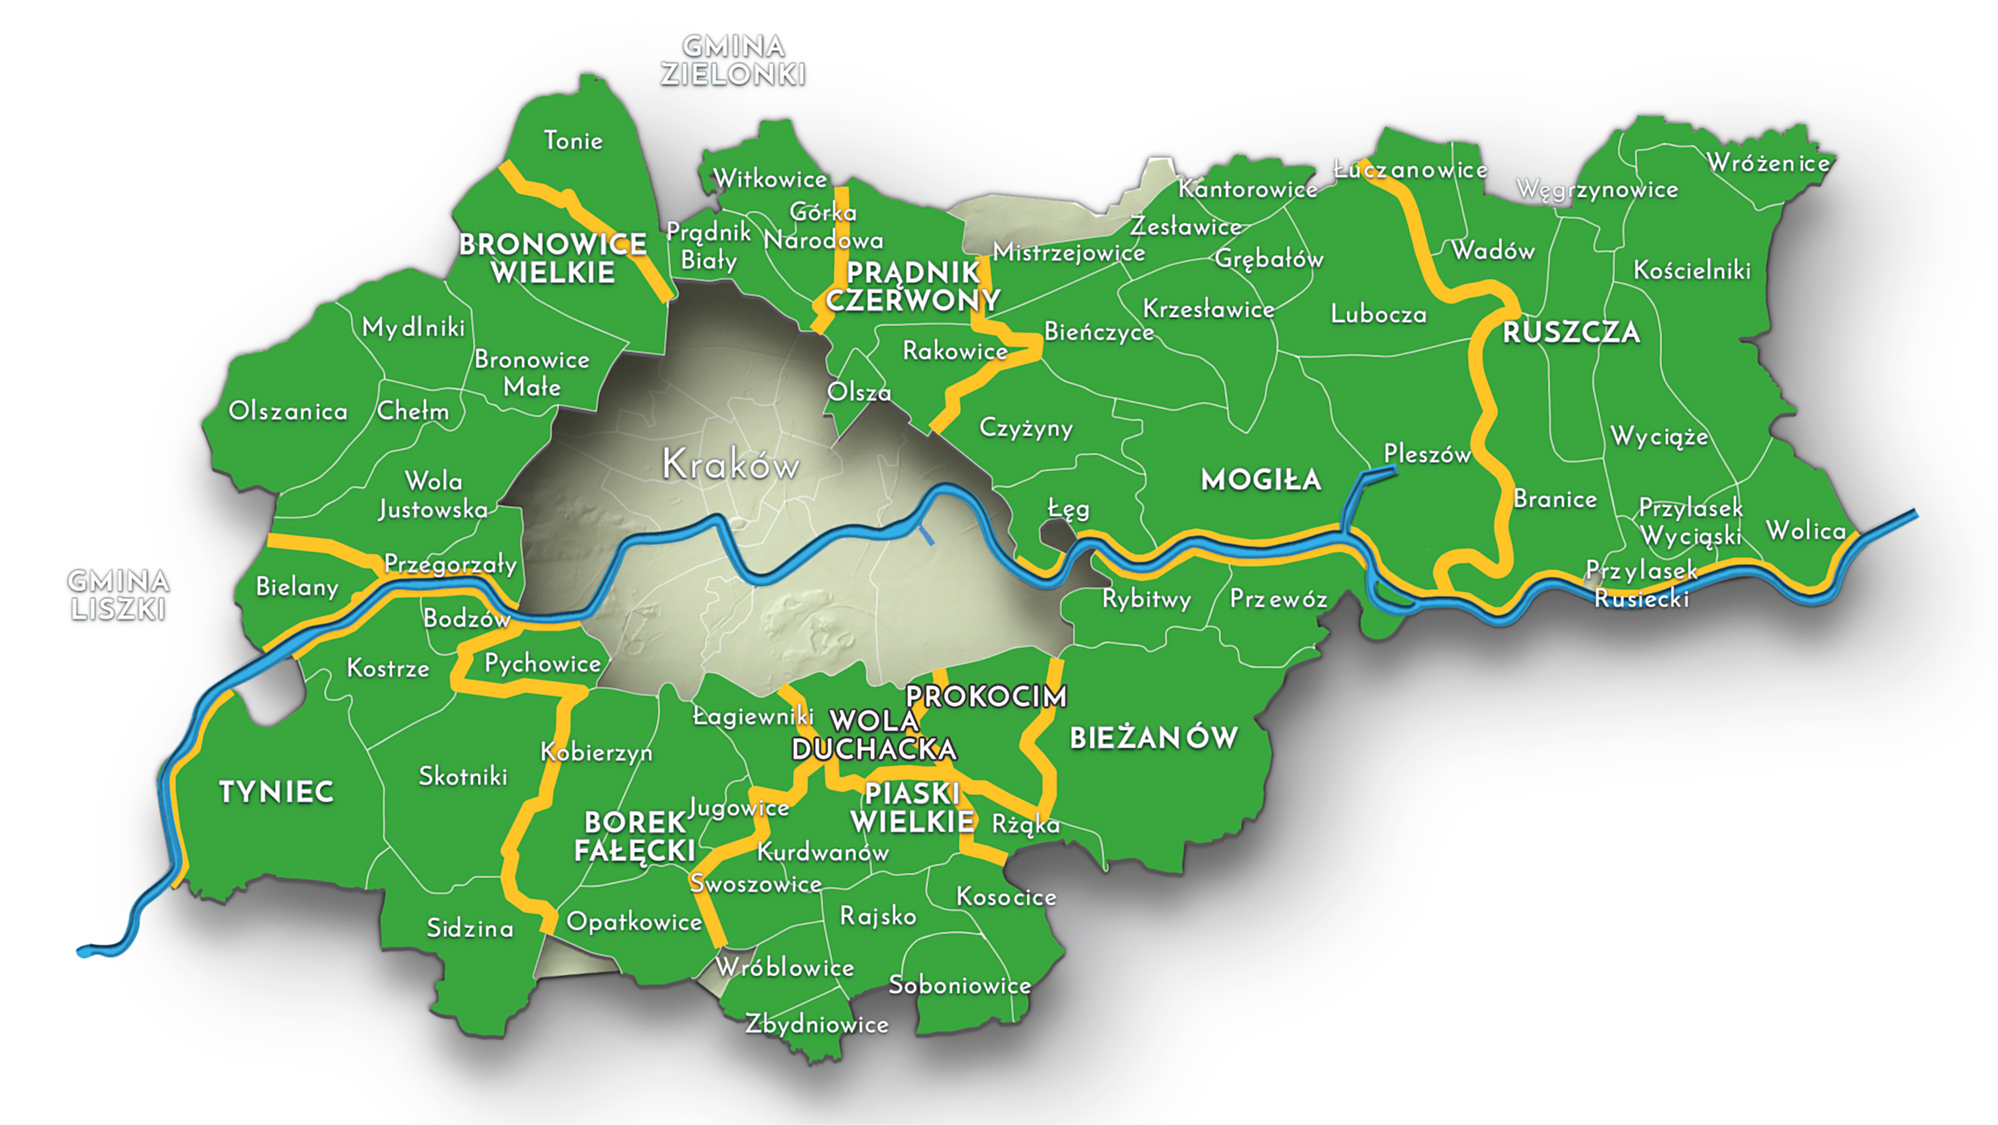 Mapa 50. Miejscowości włączone do Krakowa po 1915 roku według przynależności do powiatów oraz gmin zbiorczych i jednostkowych w II Rzeczypospolitej i w początkowym okresie okupacji niemieckiej (w latach 1934-1941).